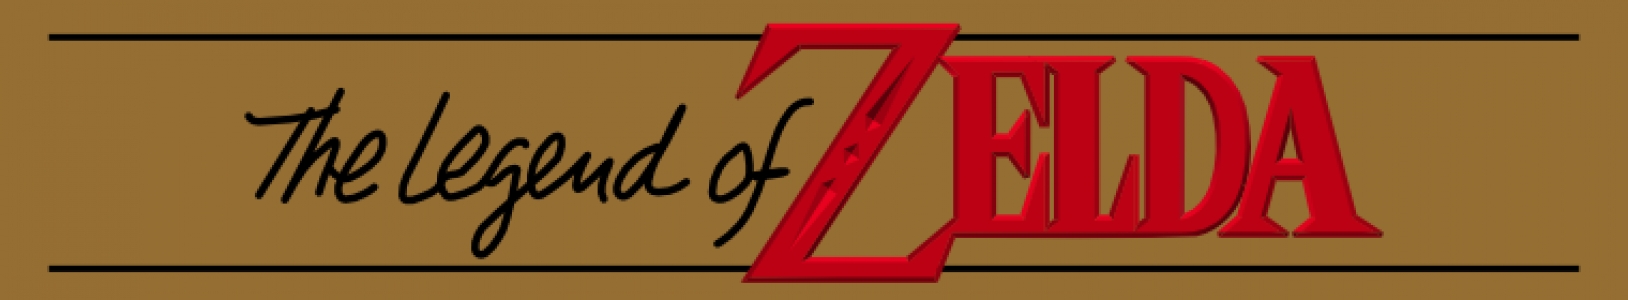 The Legend of Zelda banner